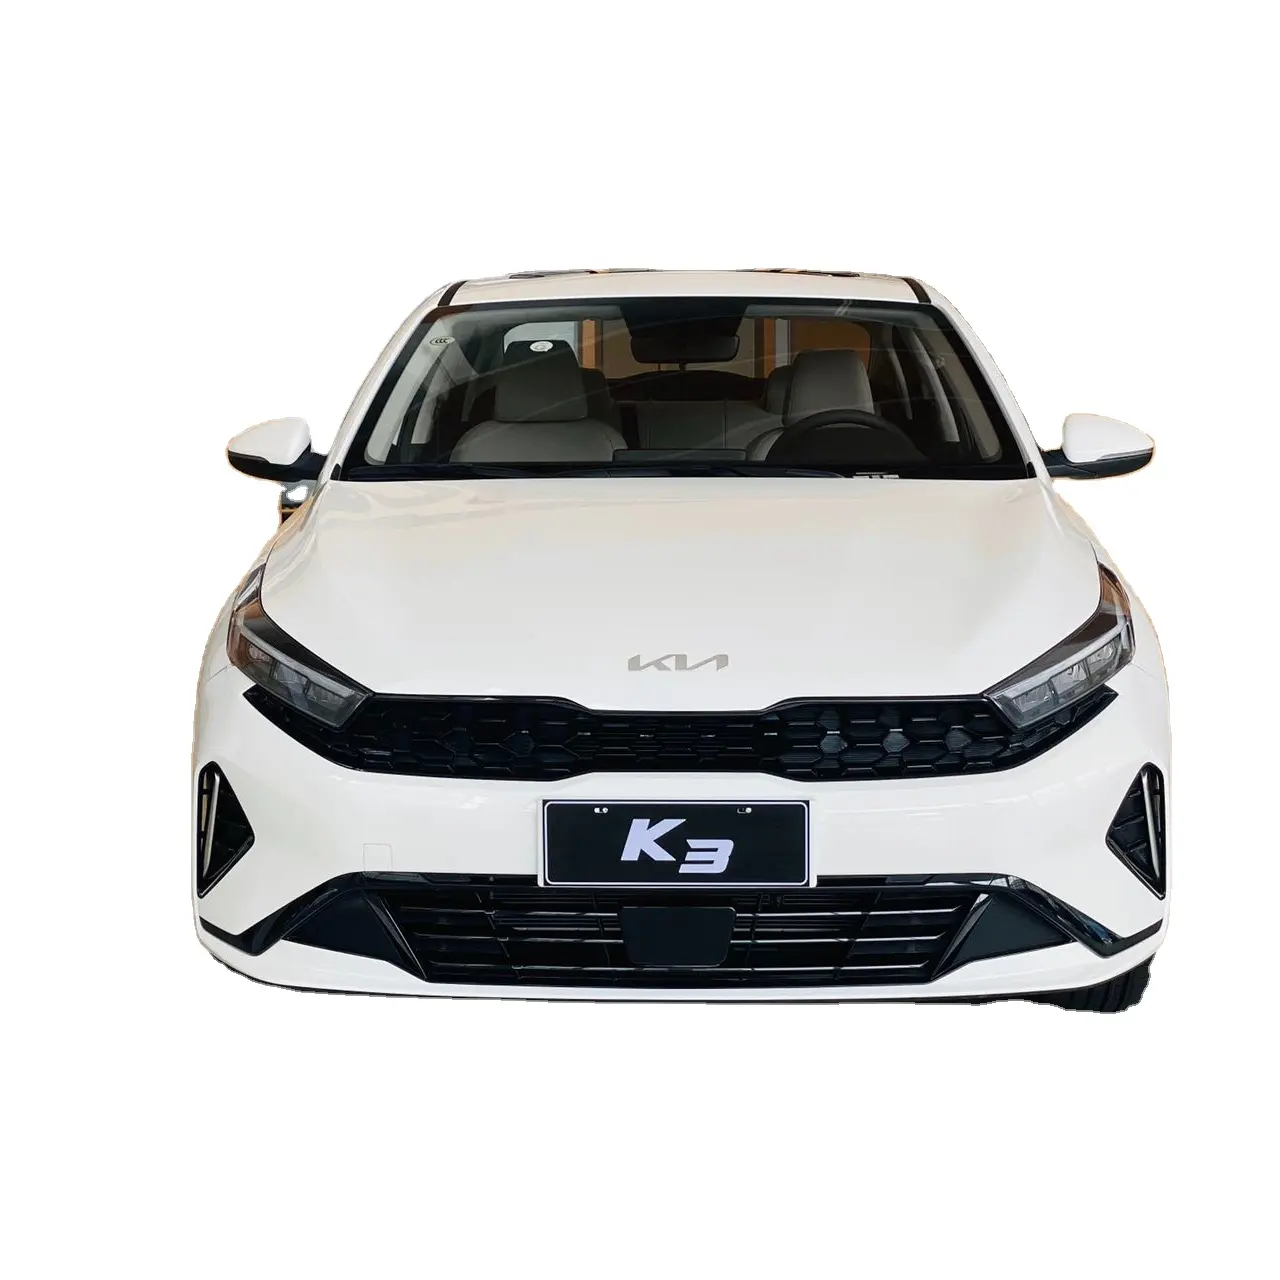 China's carro usado carro barato Coréia Hyundai Kia K3 1.5 transmissão automática